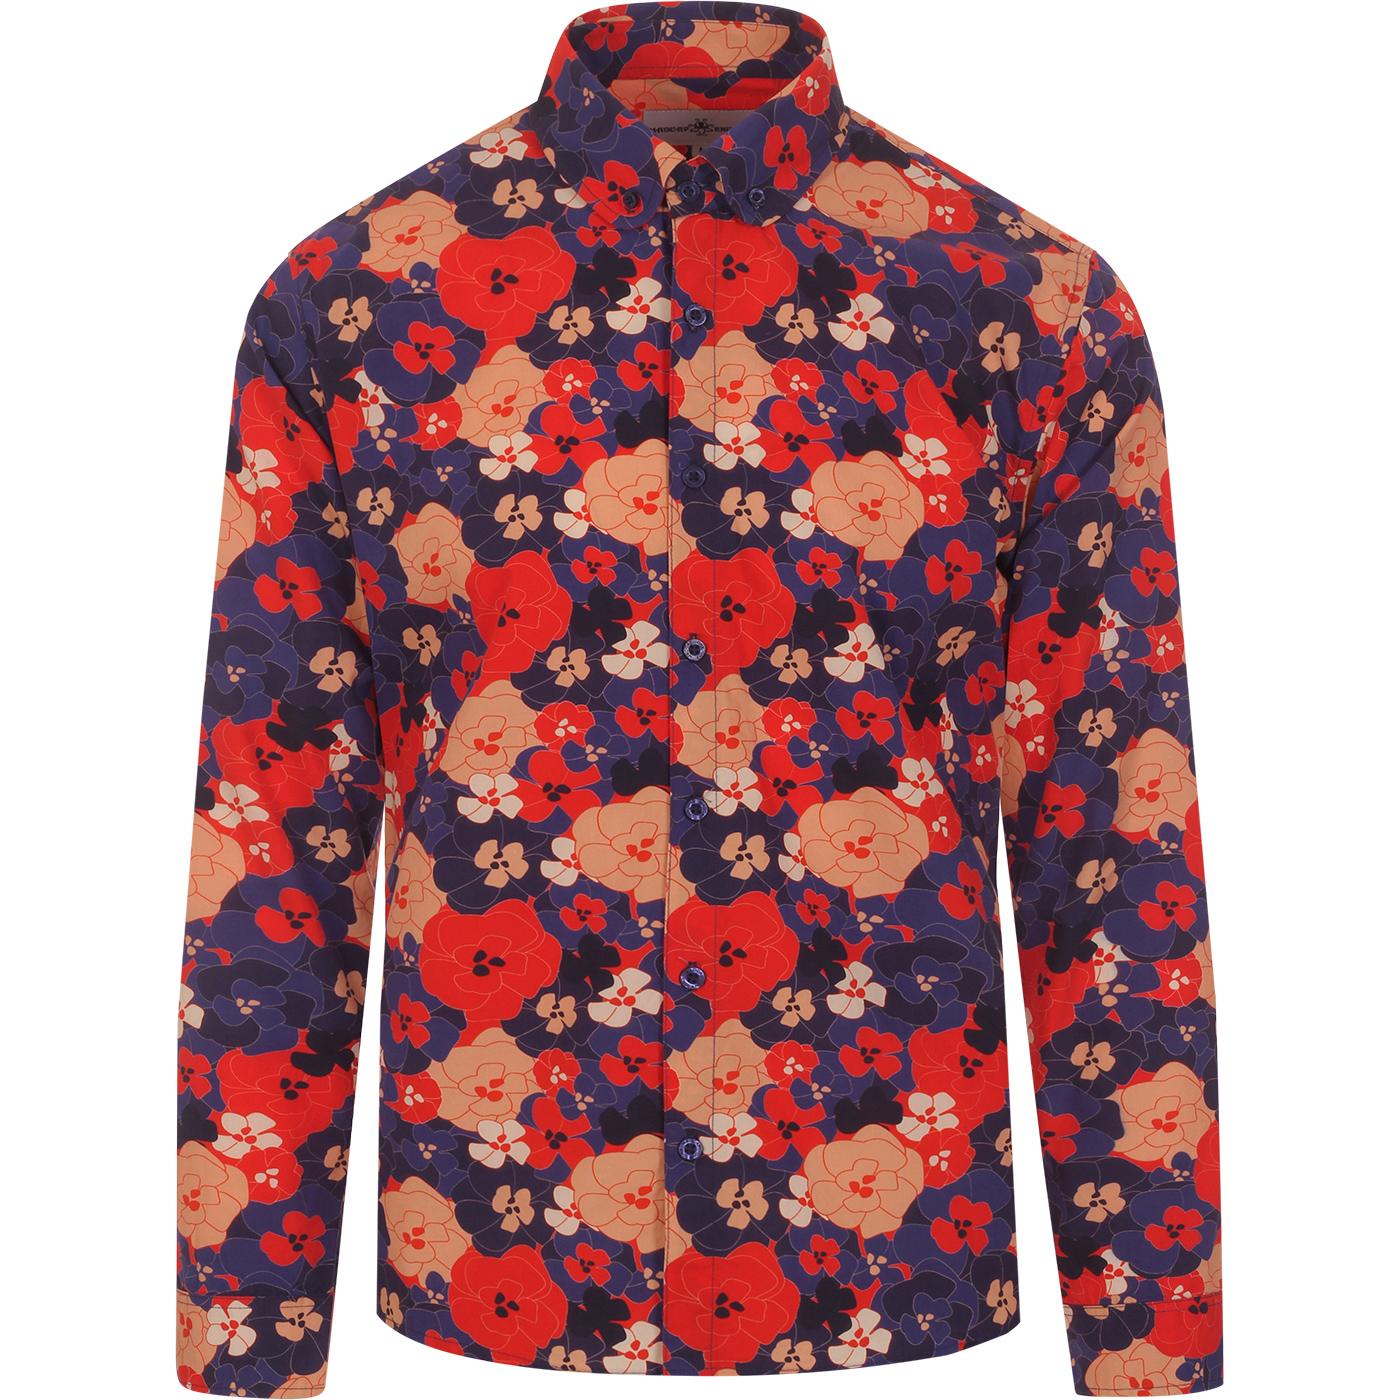 Kinfauns Floral MADCAP ENGLAND Penny Collar Shirt